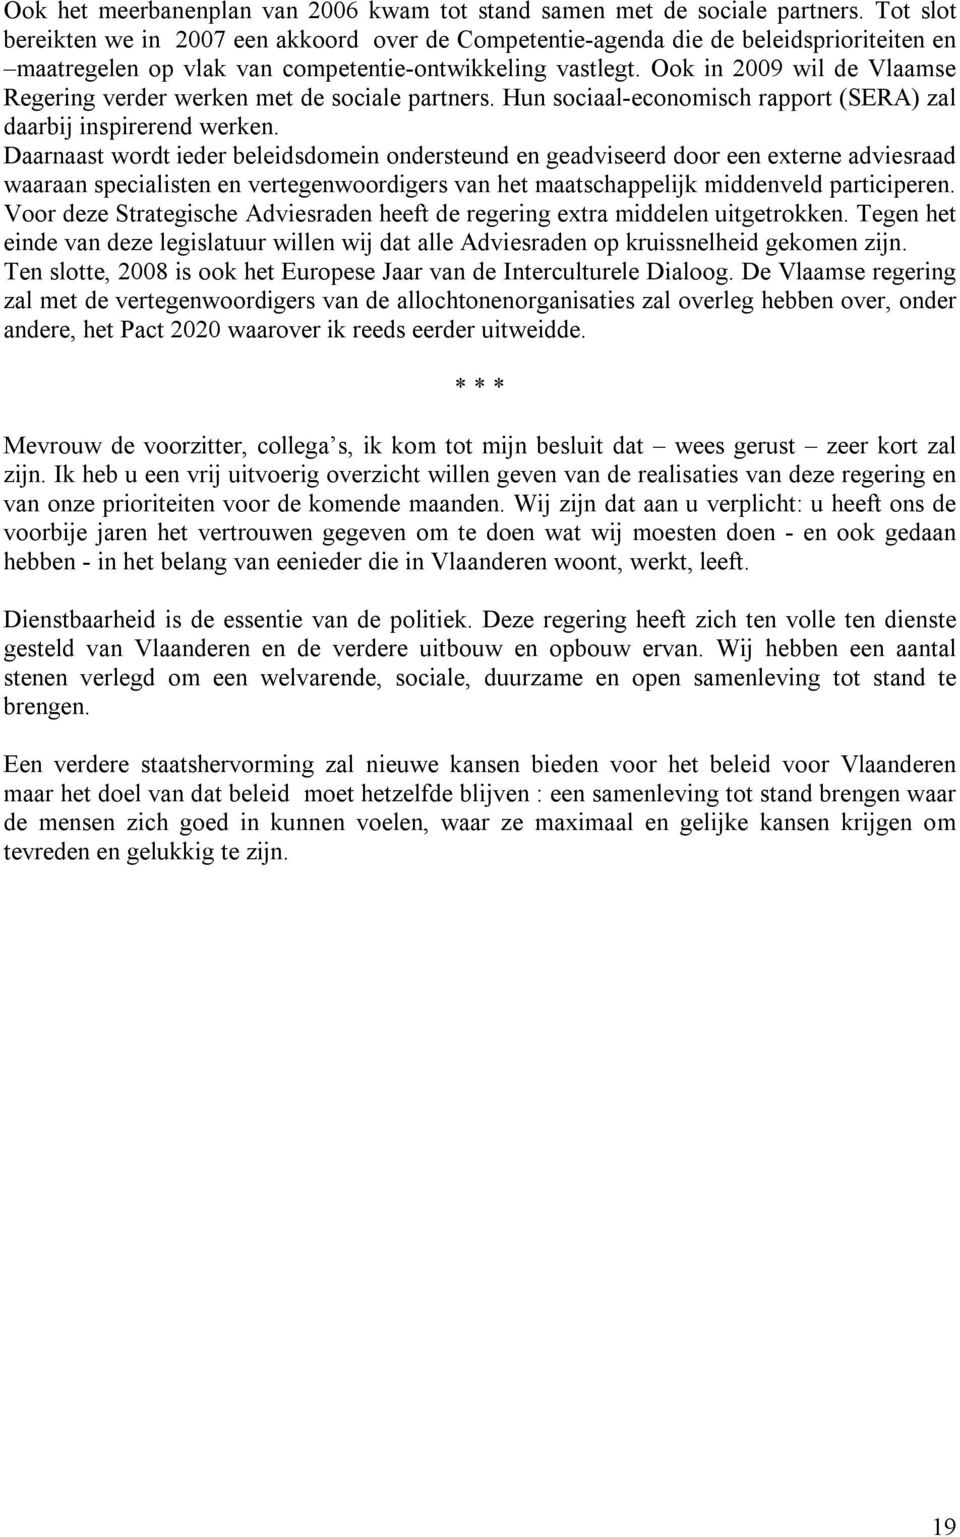 Ook in 2009 wil de Vlaamse Regering verder werken met de sociale partners. Hun sociaal economisch rapport (SERA) zal daarbij inspirerend werken.